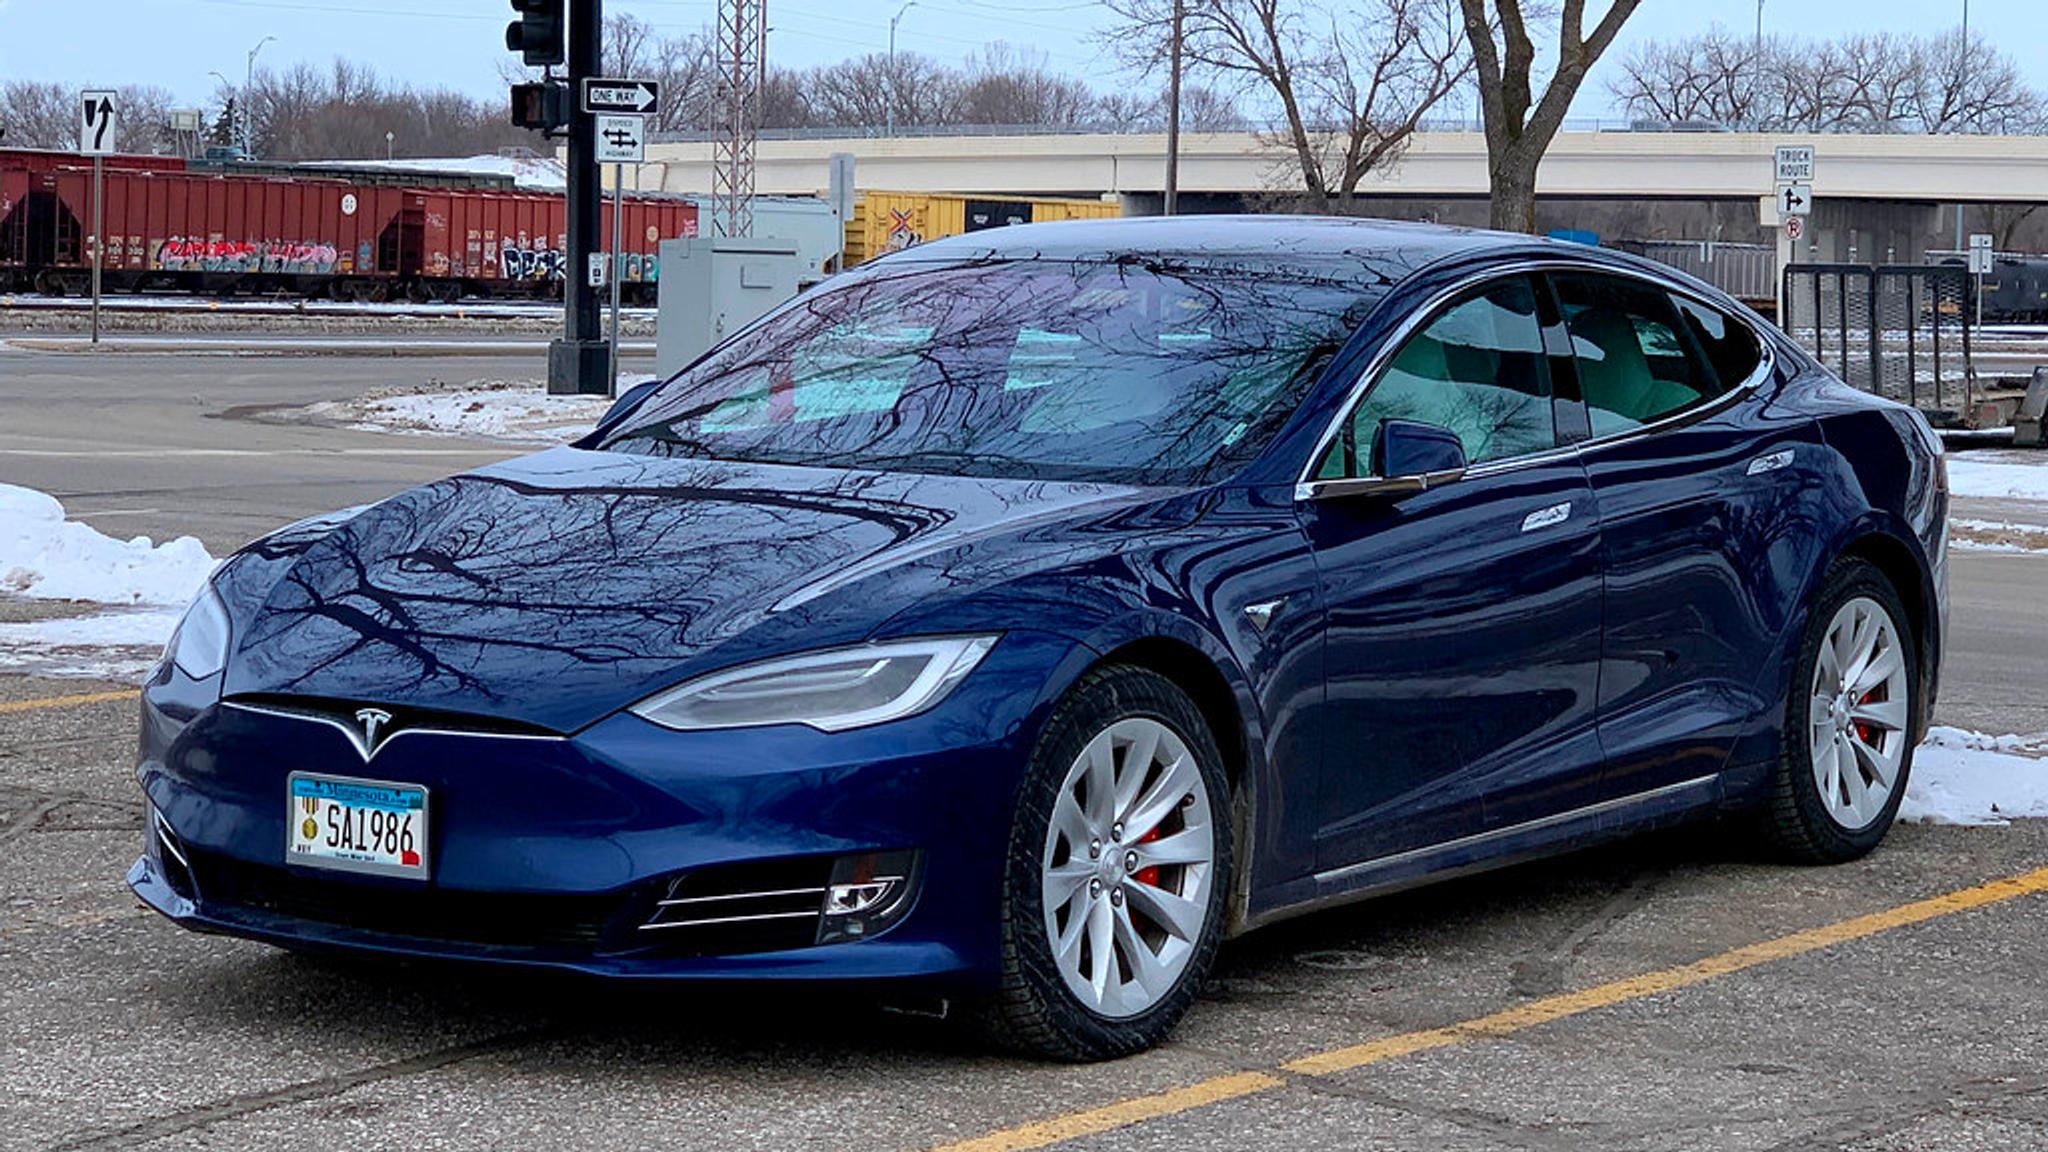 Blue Tesla Model S in the parking lot